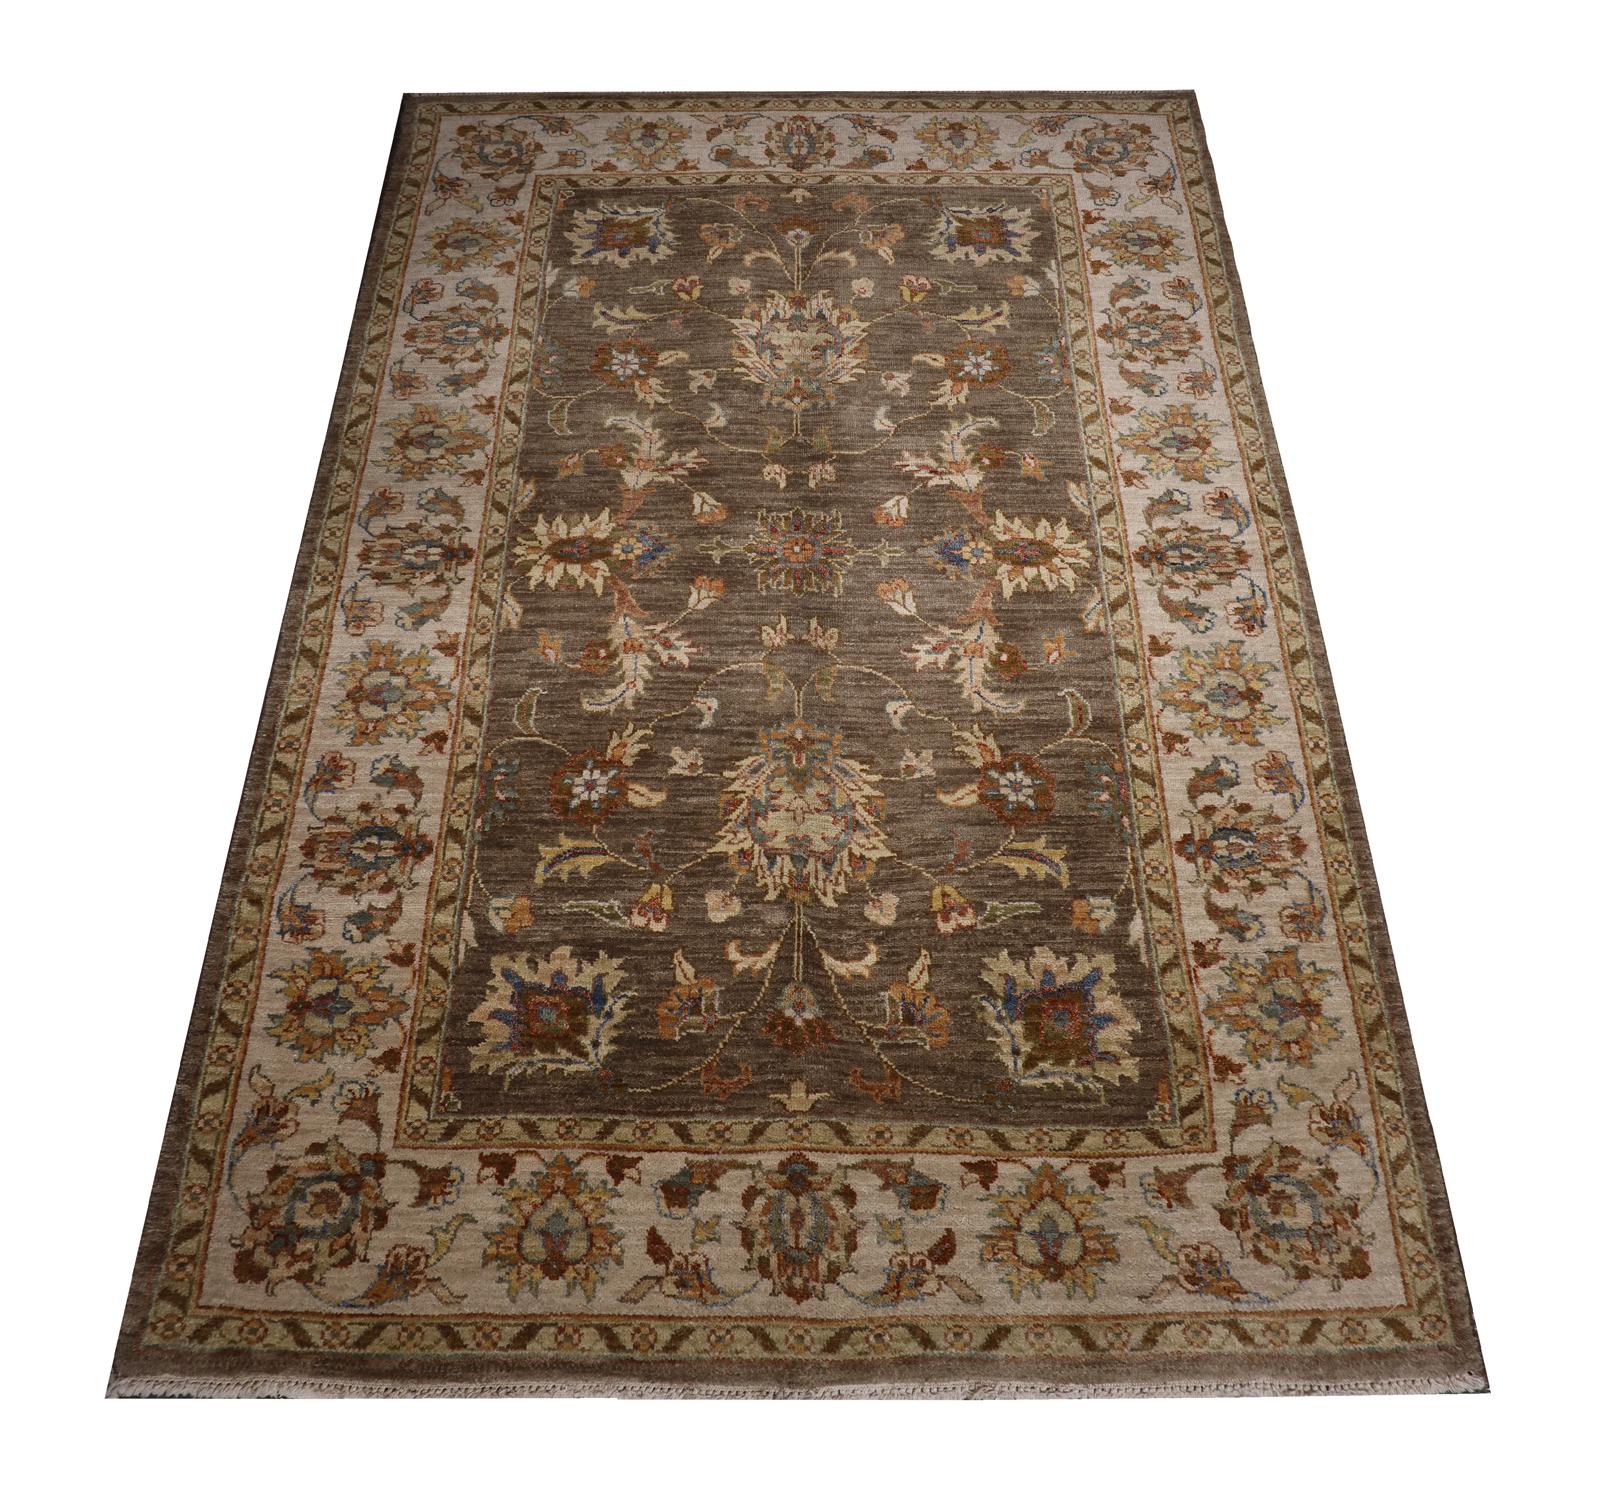 Ce tapis vintage est un tapis indien Ziegler tissé à la main avec de la laine fine et du coton. Le motif a été tissé sur un luxueux fond brun avec des accents de crème, de beige et d'orange qui composent le motif floral symétrique. Le design